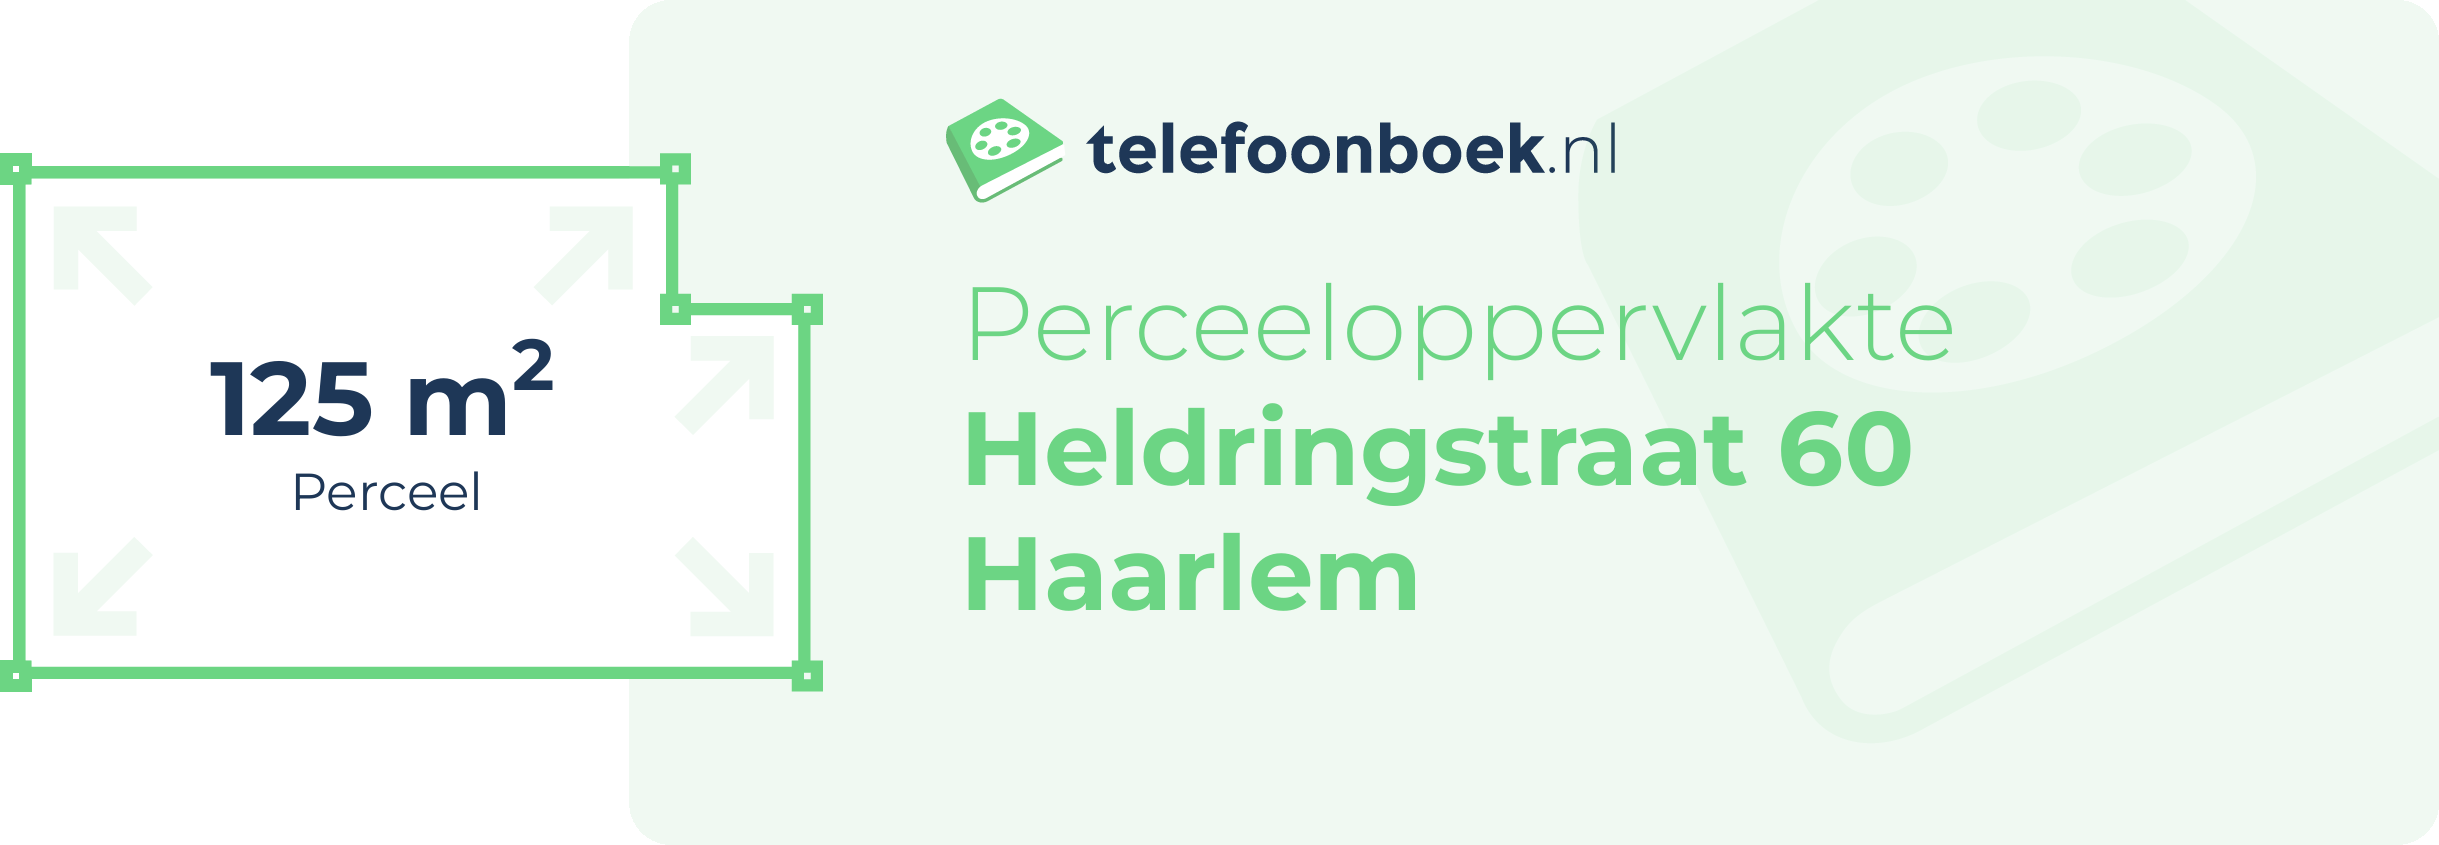 Perceeloppervlakte Heldringstraat 60 Haarlem